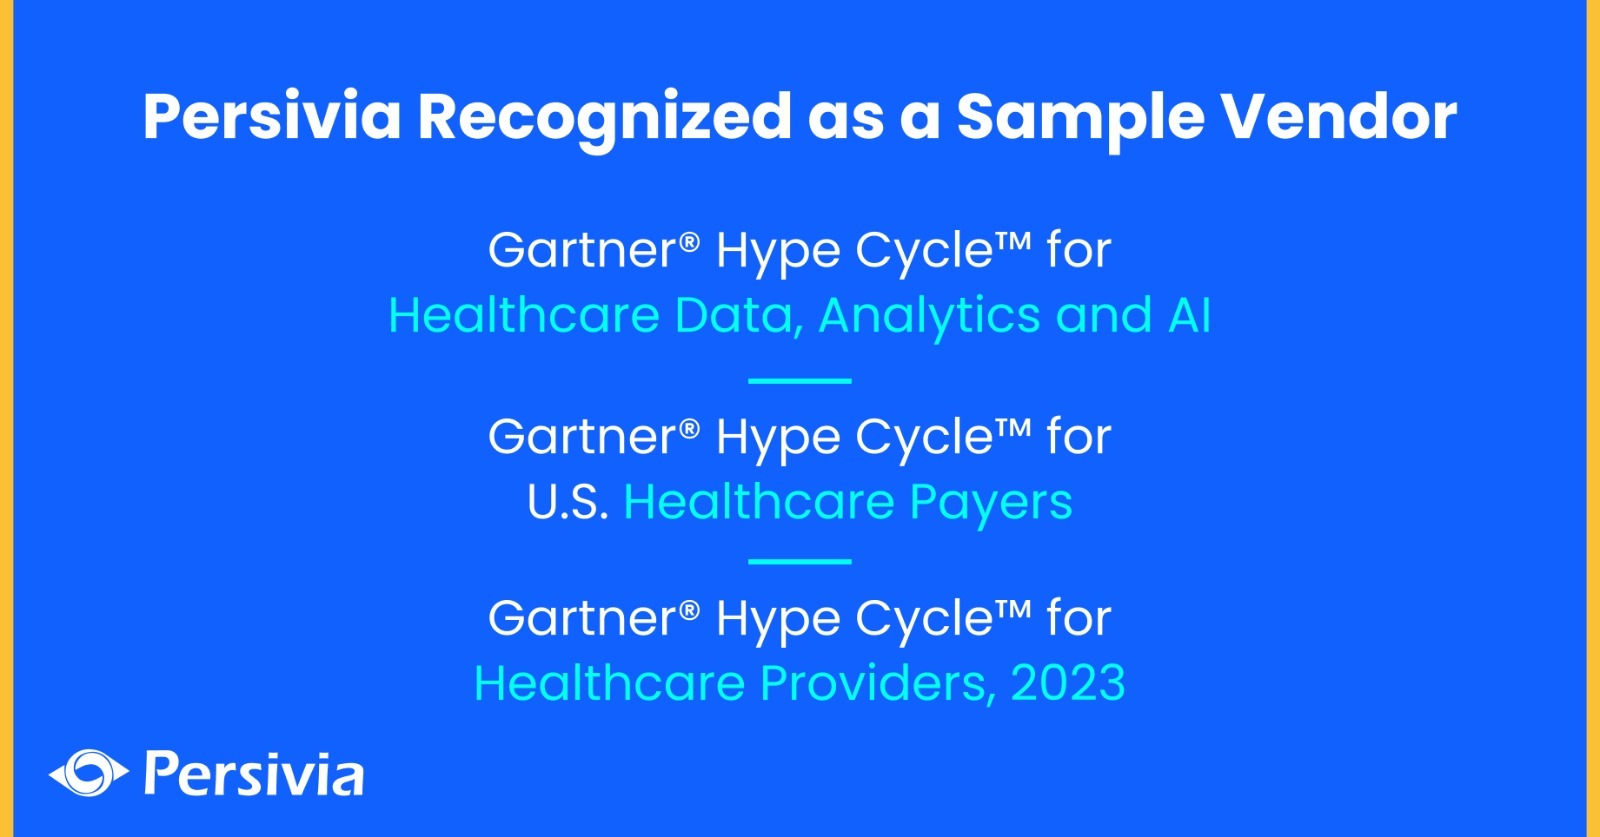 Gartner Hype Cycle 2023